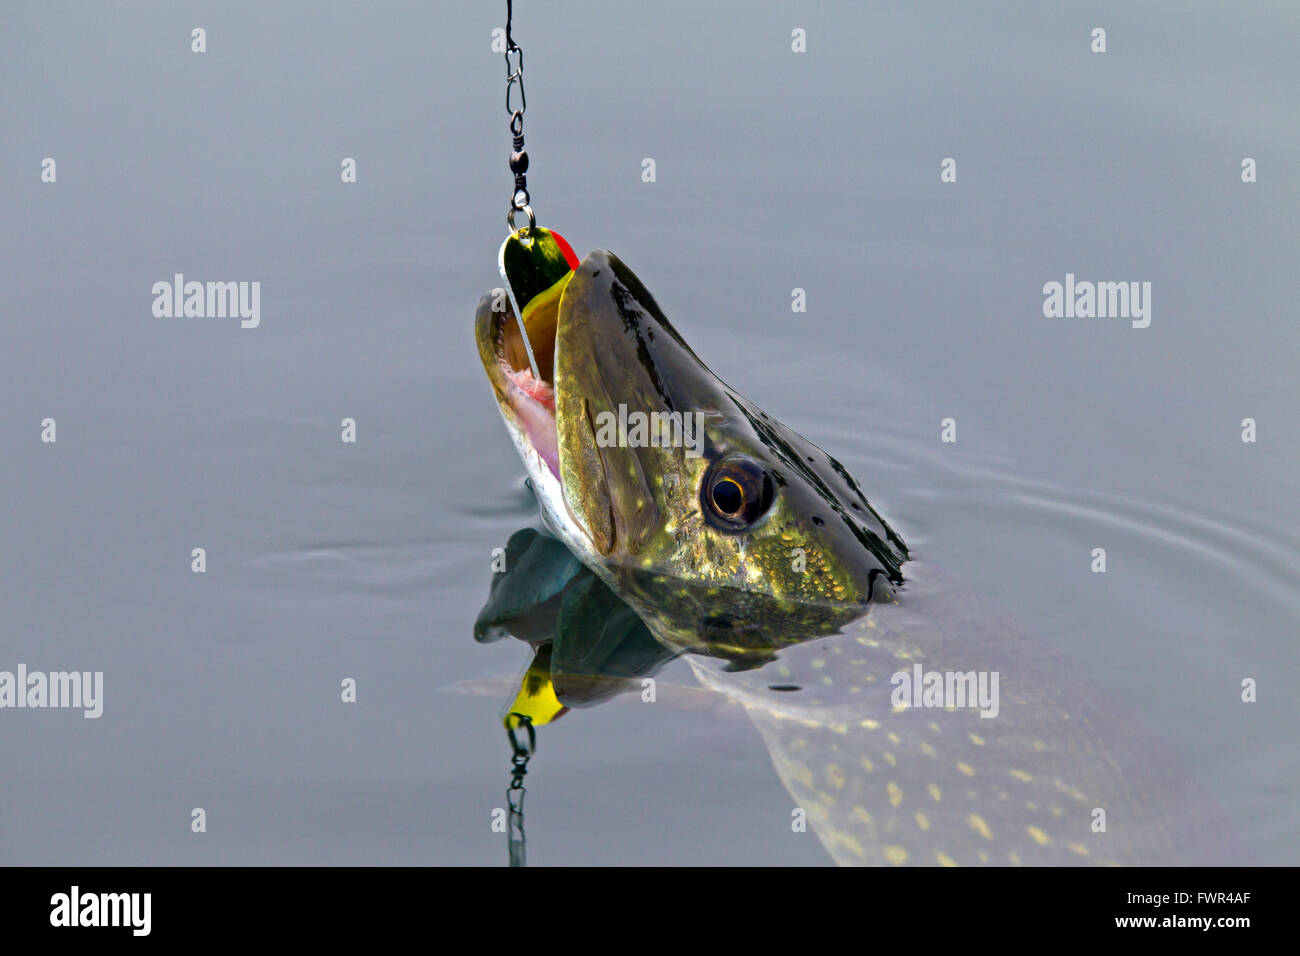 Foul Hook Fish Stock Photos - 12 Images